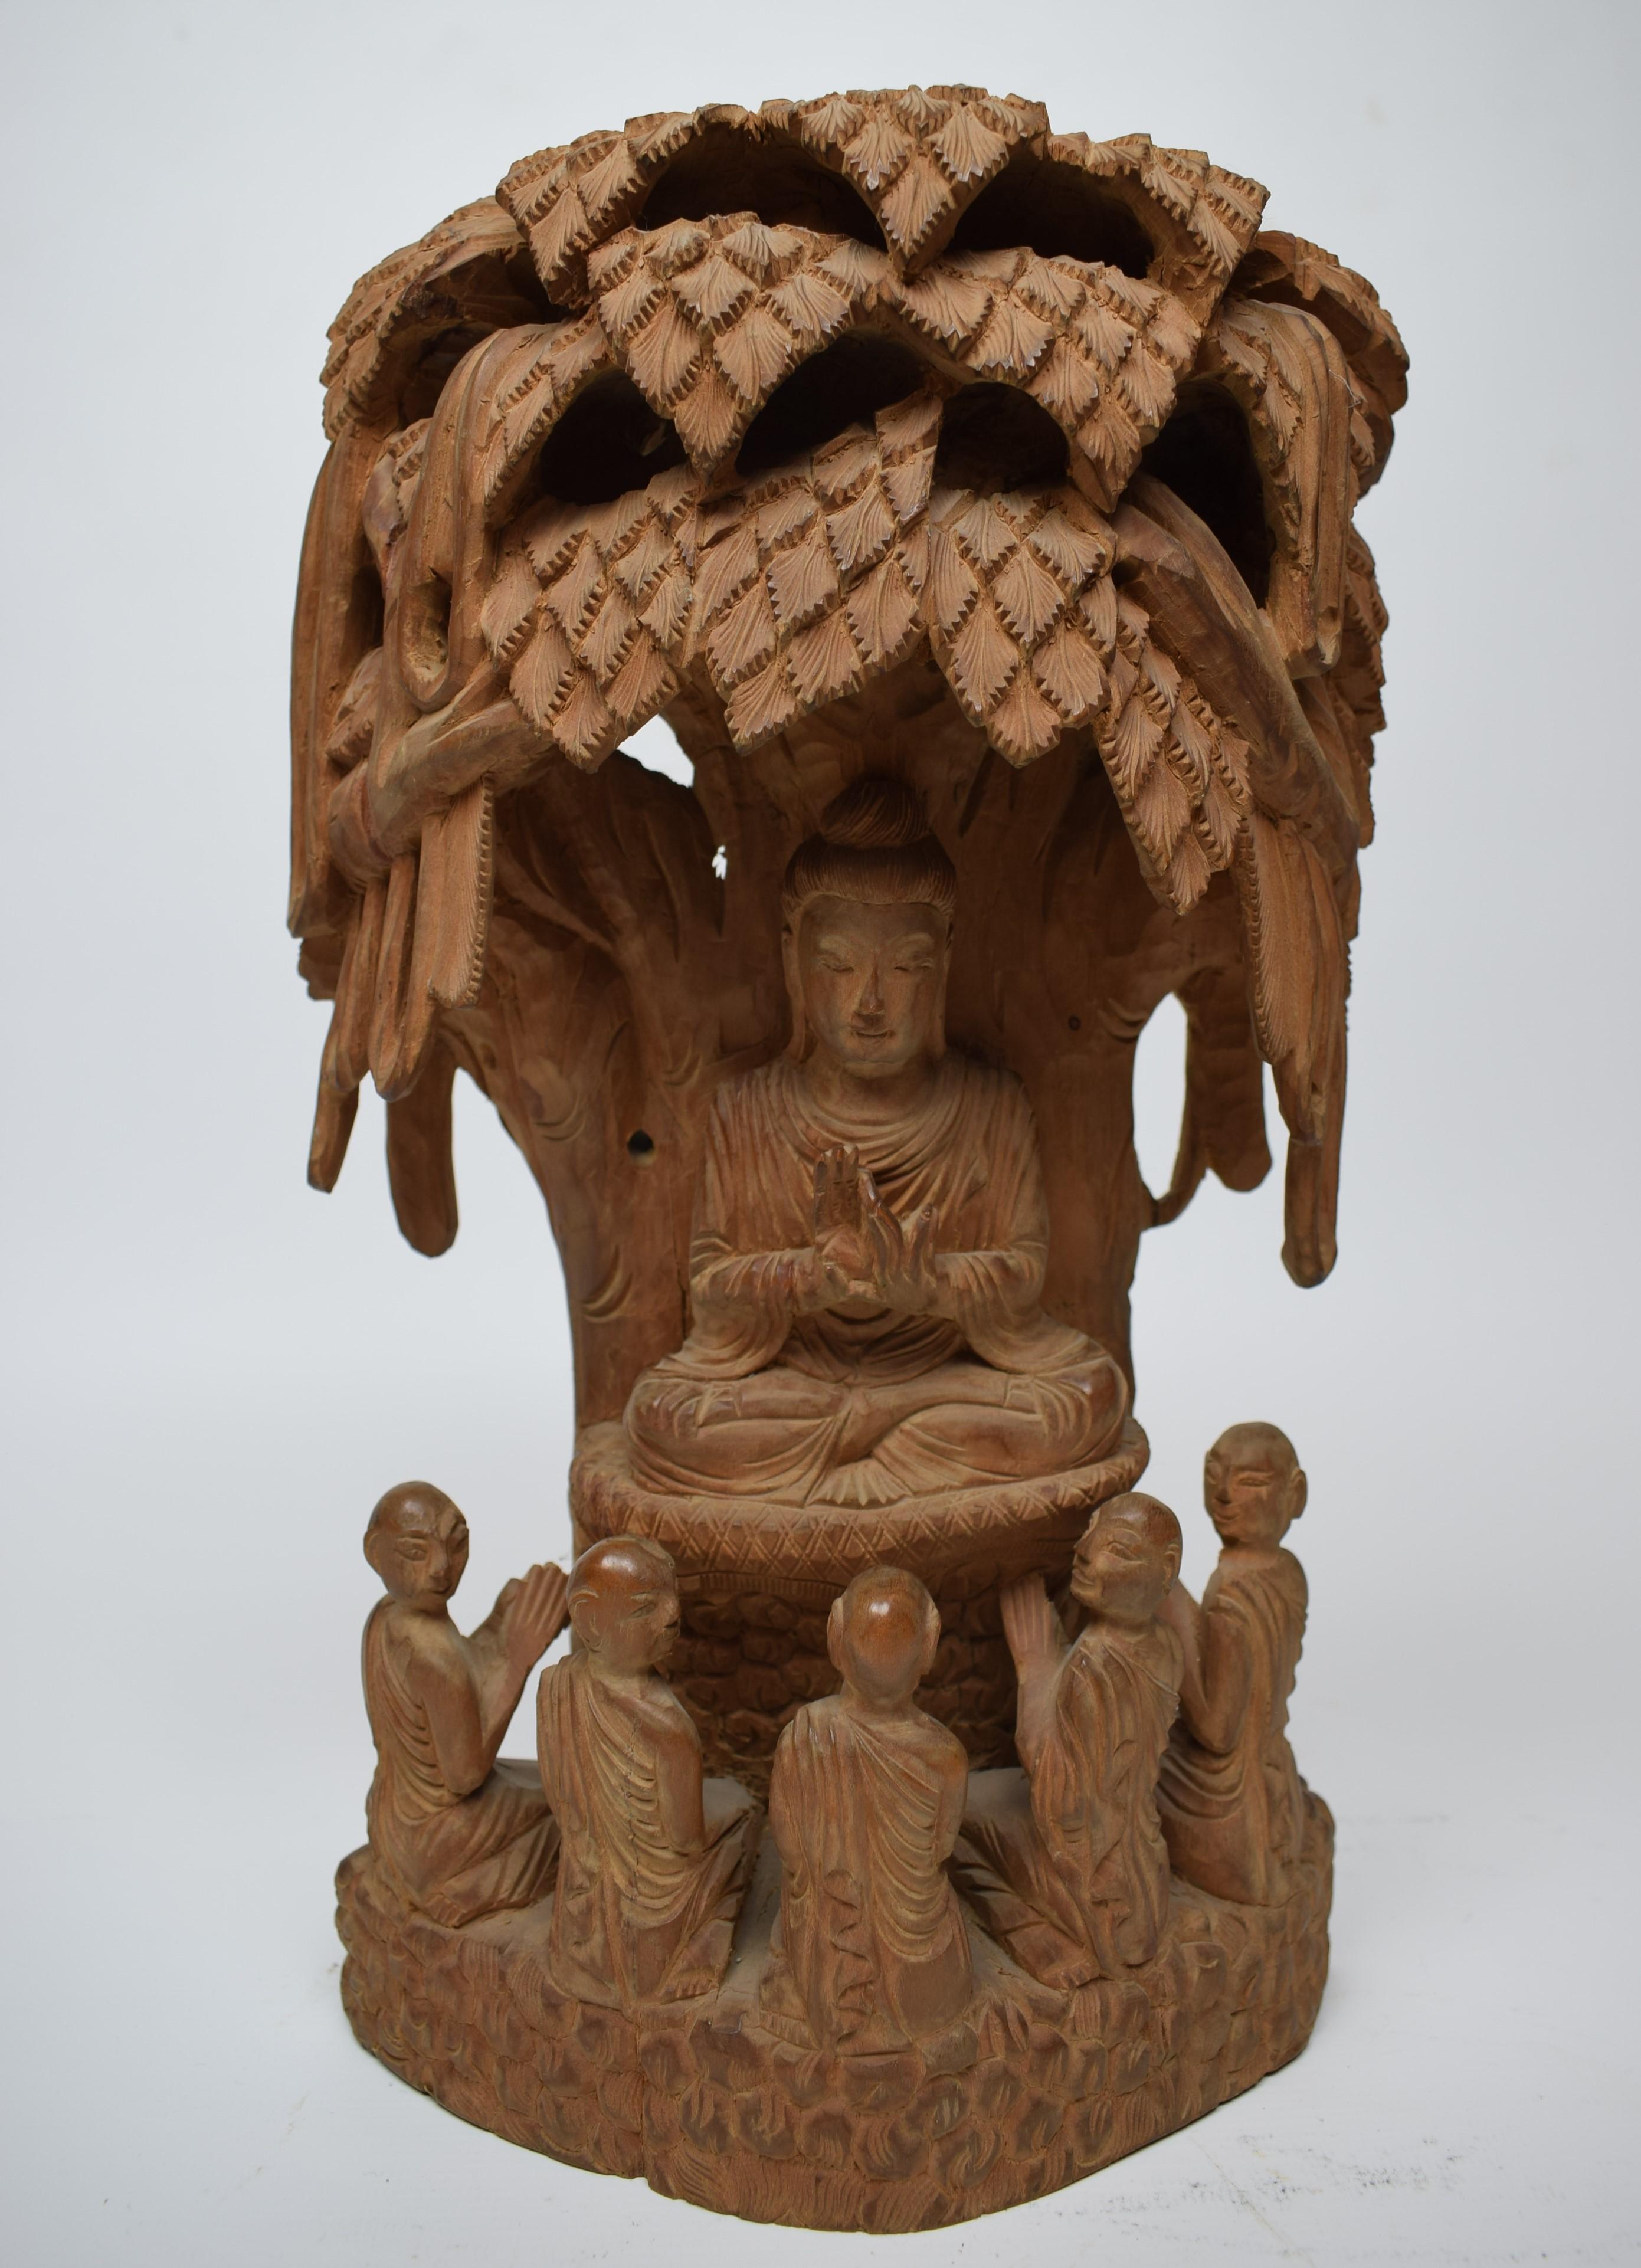 La sculpture, taillée de manière experte dans du bois de santal népalais parfumé, témoigne de la riche tradition de la sculpture sur bois au Népal. La Nature elle-même ajoute une dimension sensorielle à l'œuvre d'art, l'arôme subtil et naturel du